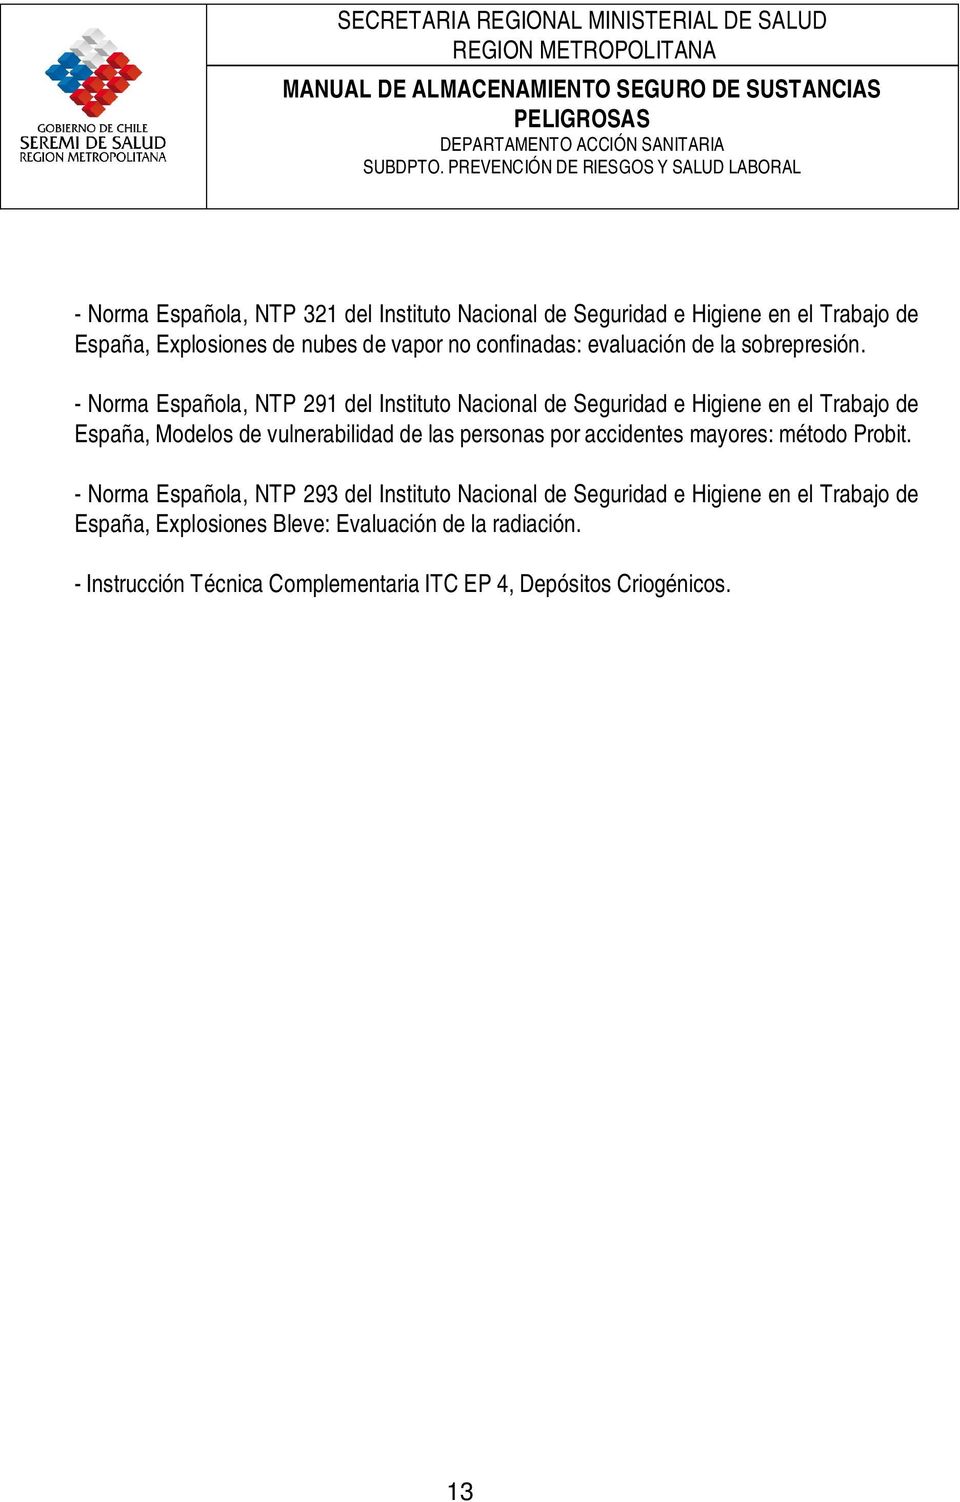 - Norma Española, NTP 291 del Instituto Nacional de Seguridad e Higiene en el Trabajo de España, Modelos de vulnerabilidad de las personas